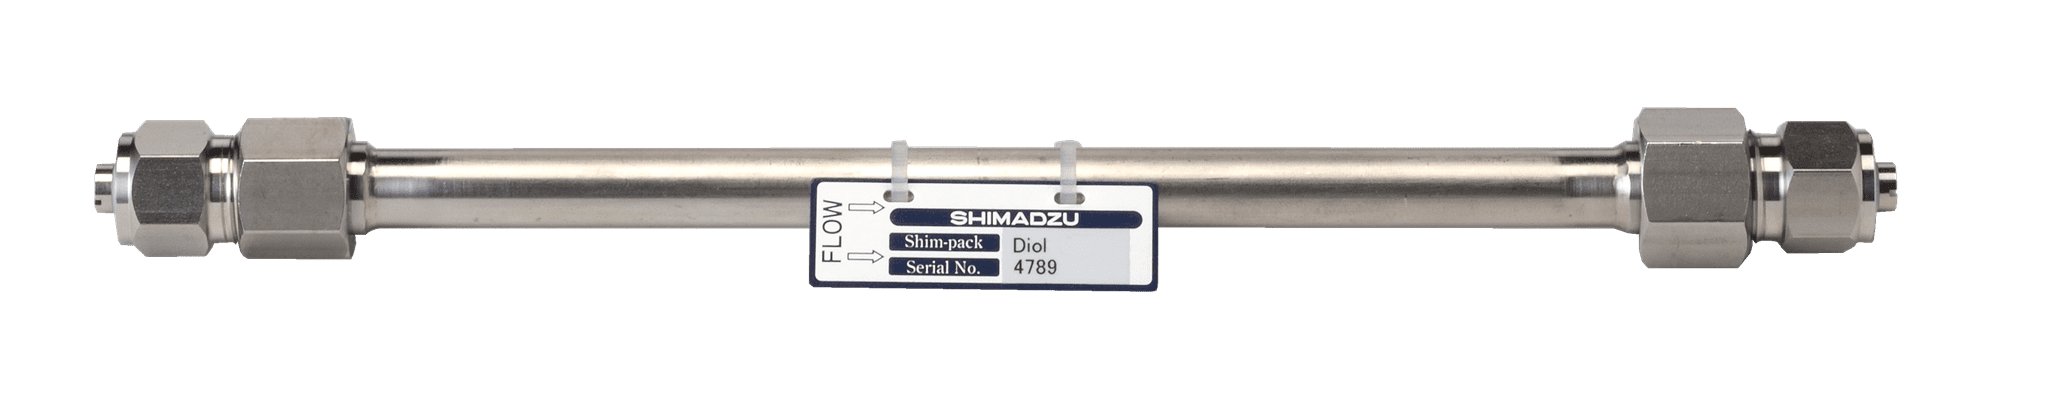 Afbeelding van Shim-pack Diol-150; 5 µm; 250 x 7.9